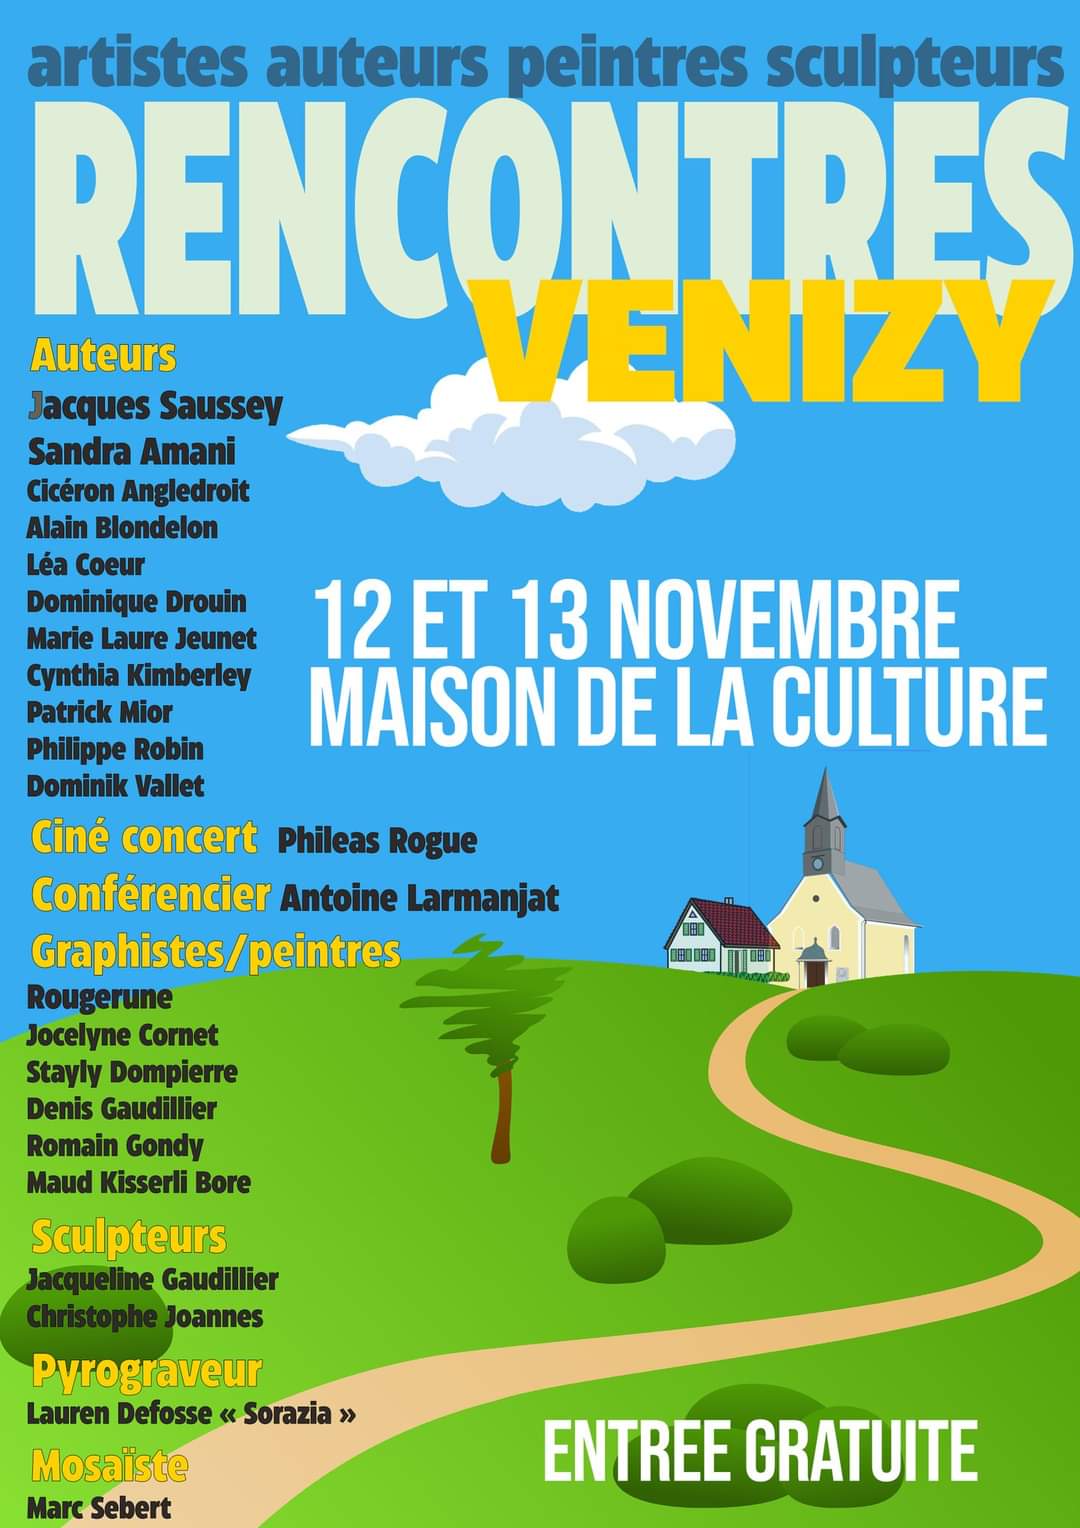 Affiche du salon de venizy 12 et 13 novembre 2022